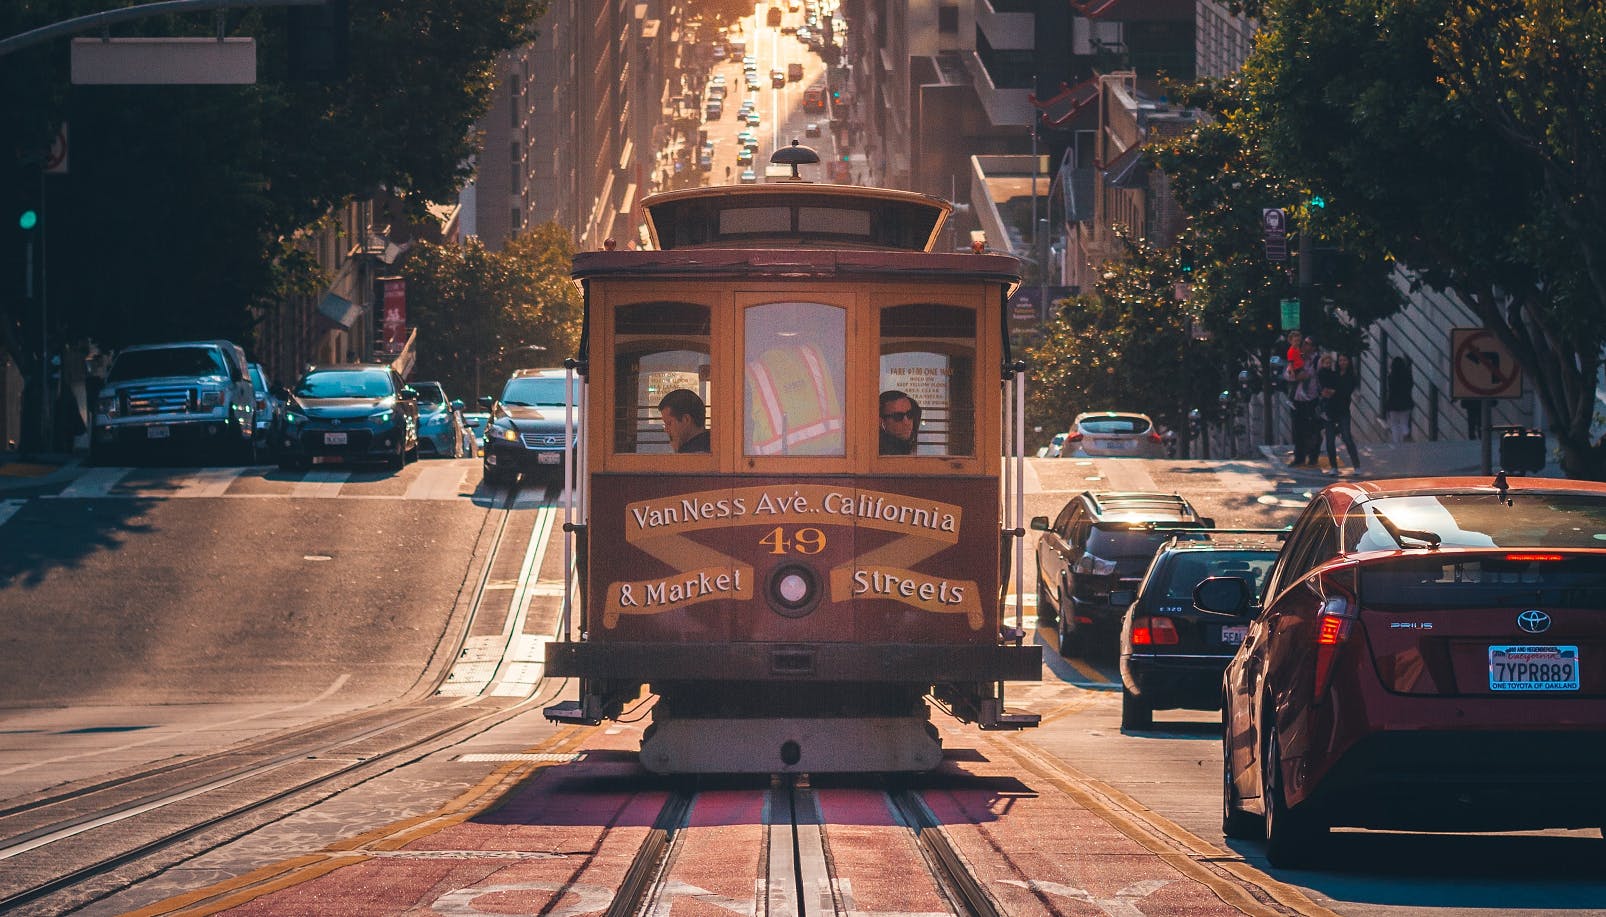 Gra eksploracyjna i wycieczka w epoce gorączki złota w San Francisco